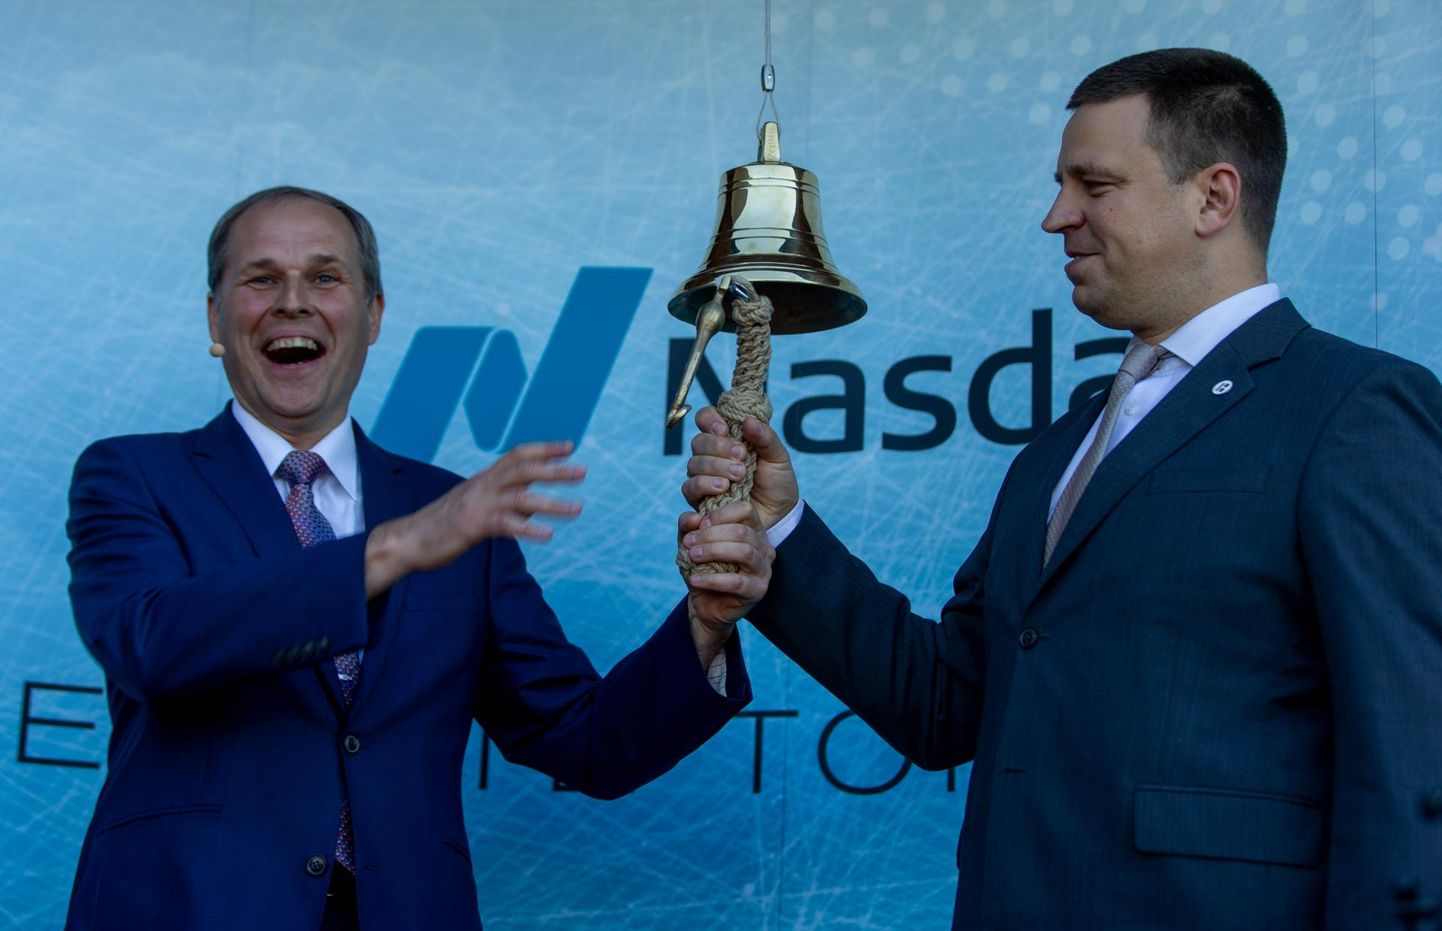 Tallinna Sadama juht Valdo Kalm ja peaminister Jüri Ratas helistasid eile koos börsikella, nii et tila tuli kella küljest lahti.